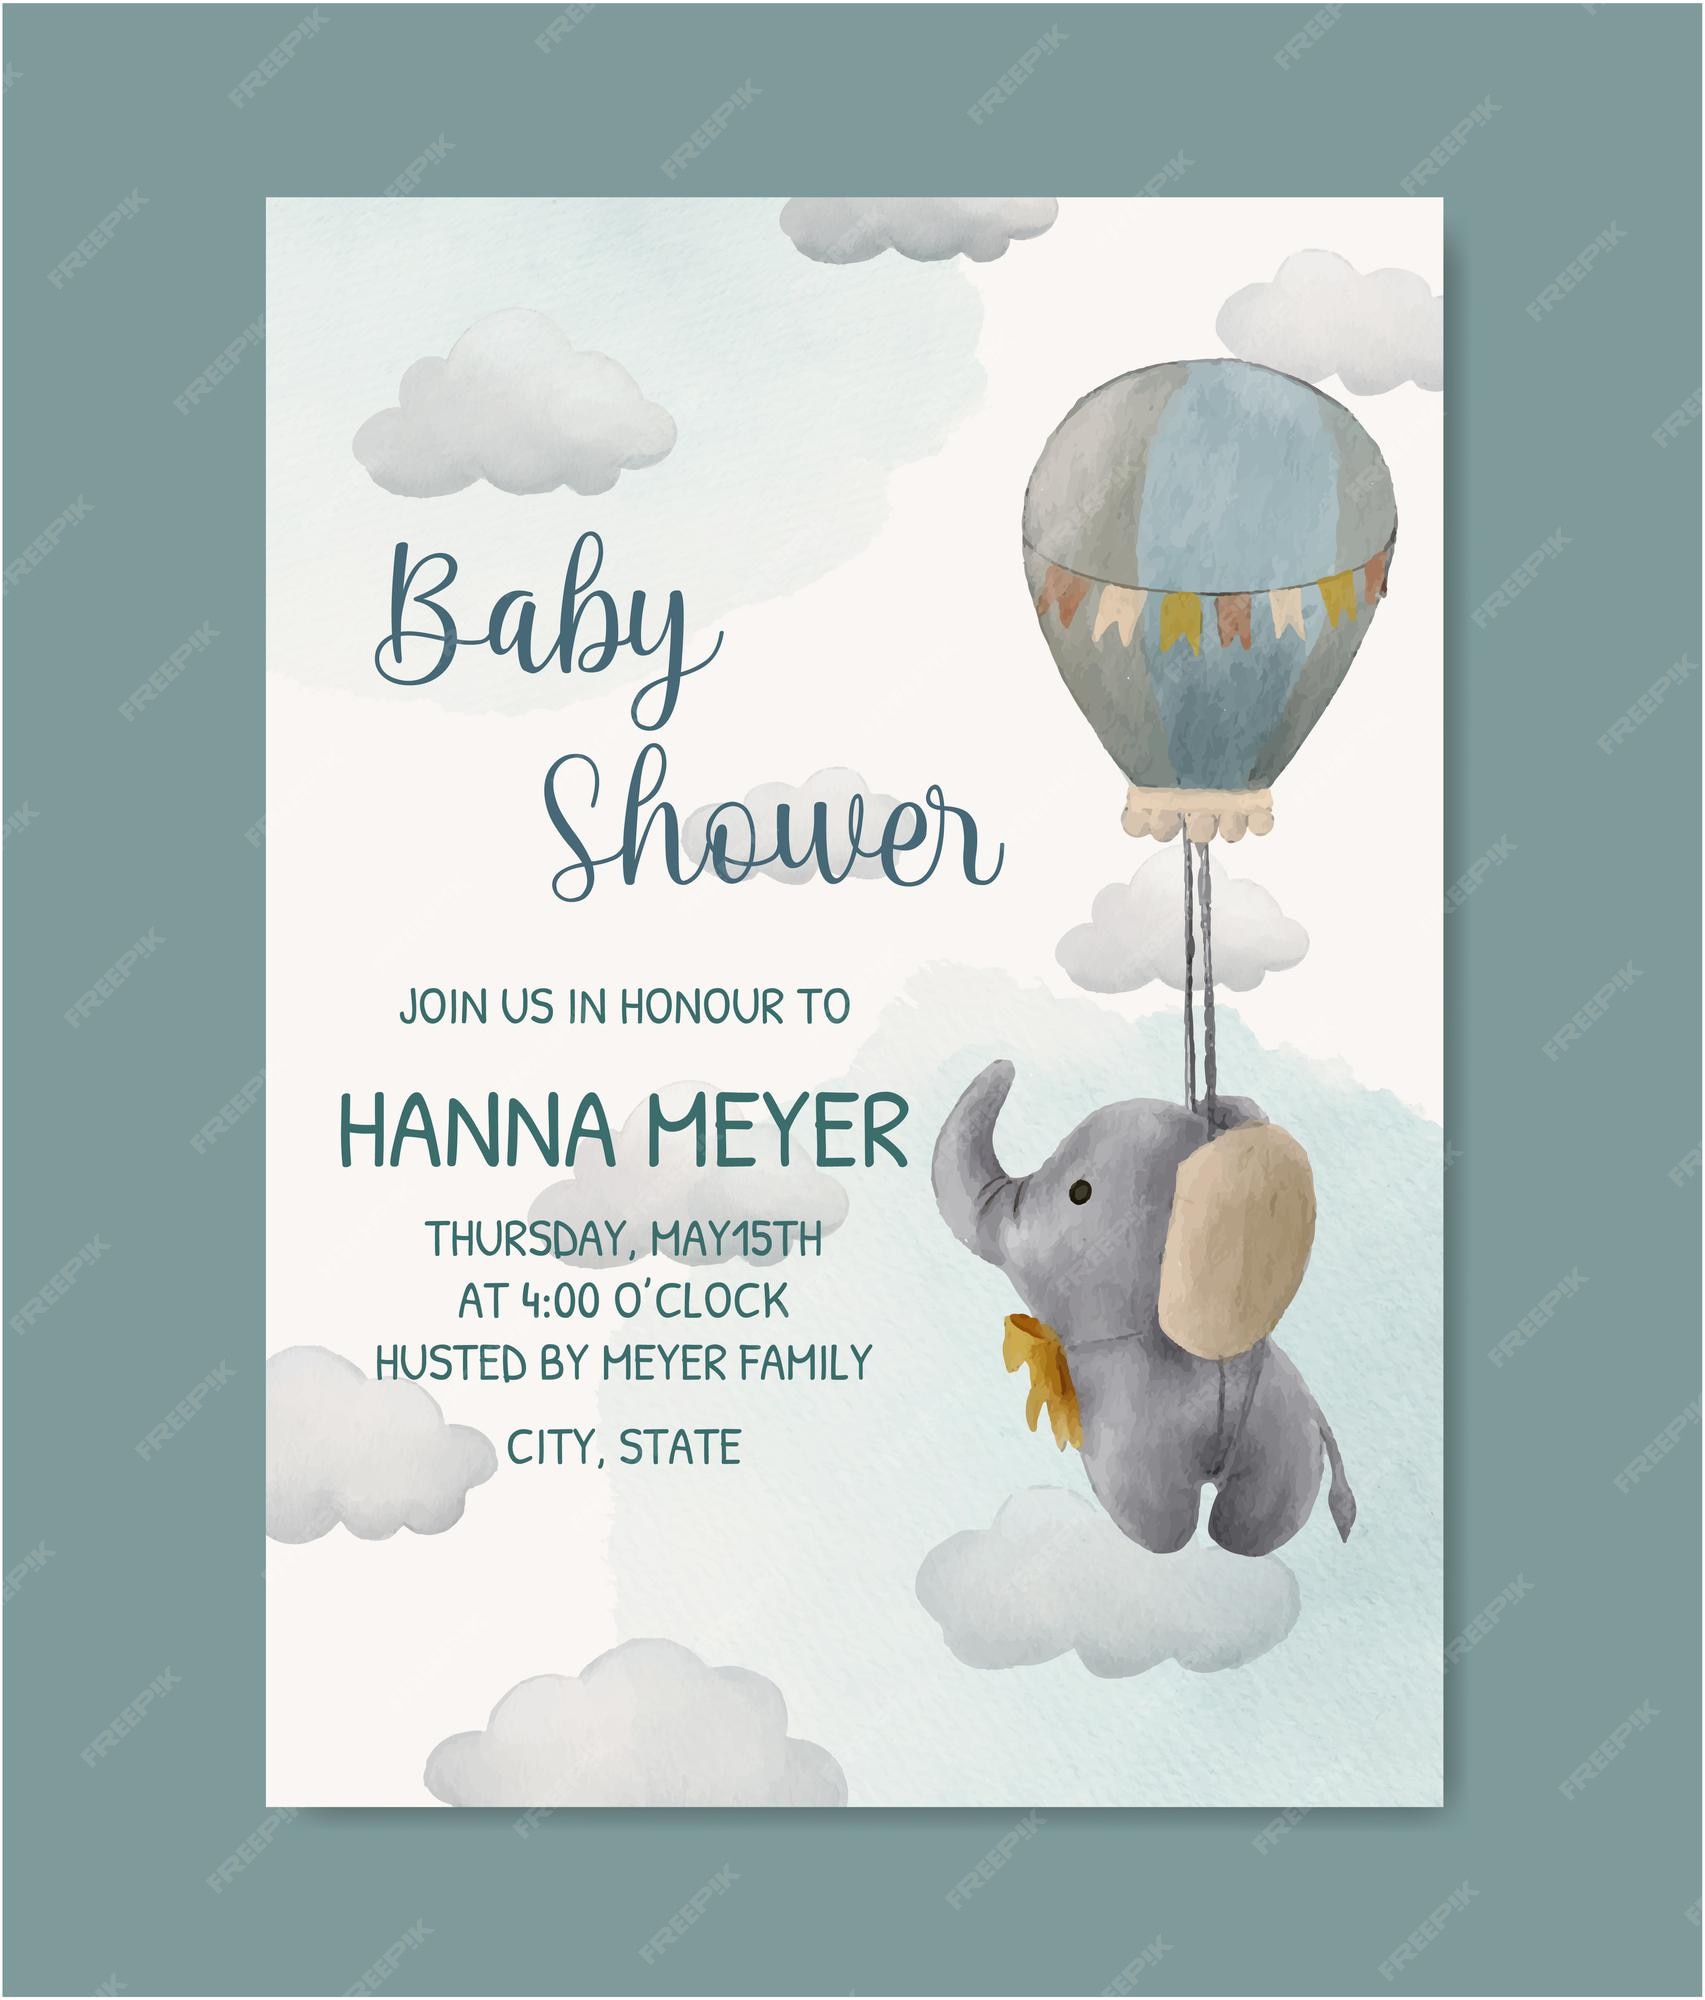 Vectores e ilustraciones de Tarjeta invitacion baby shower para descargar  gratis | Freepik